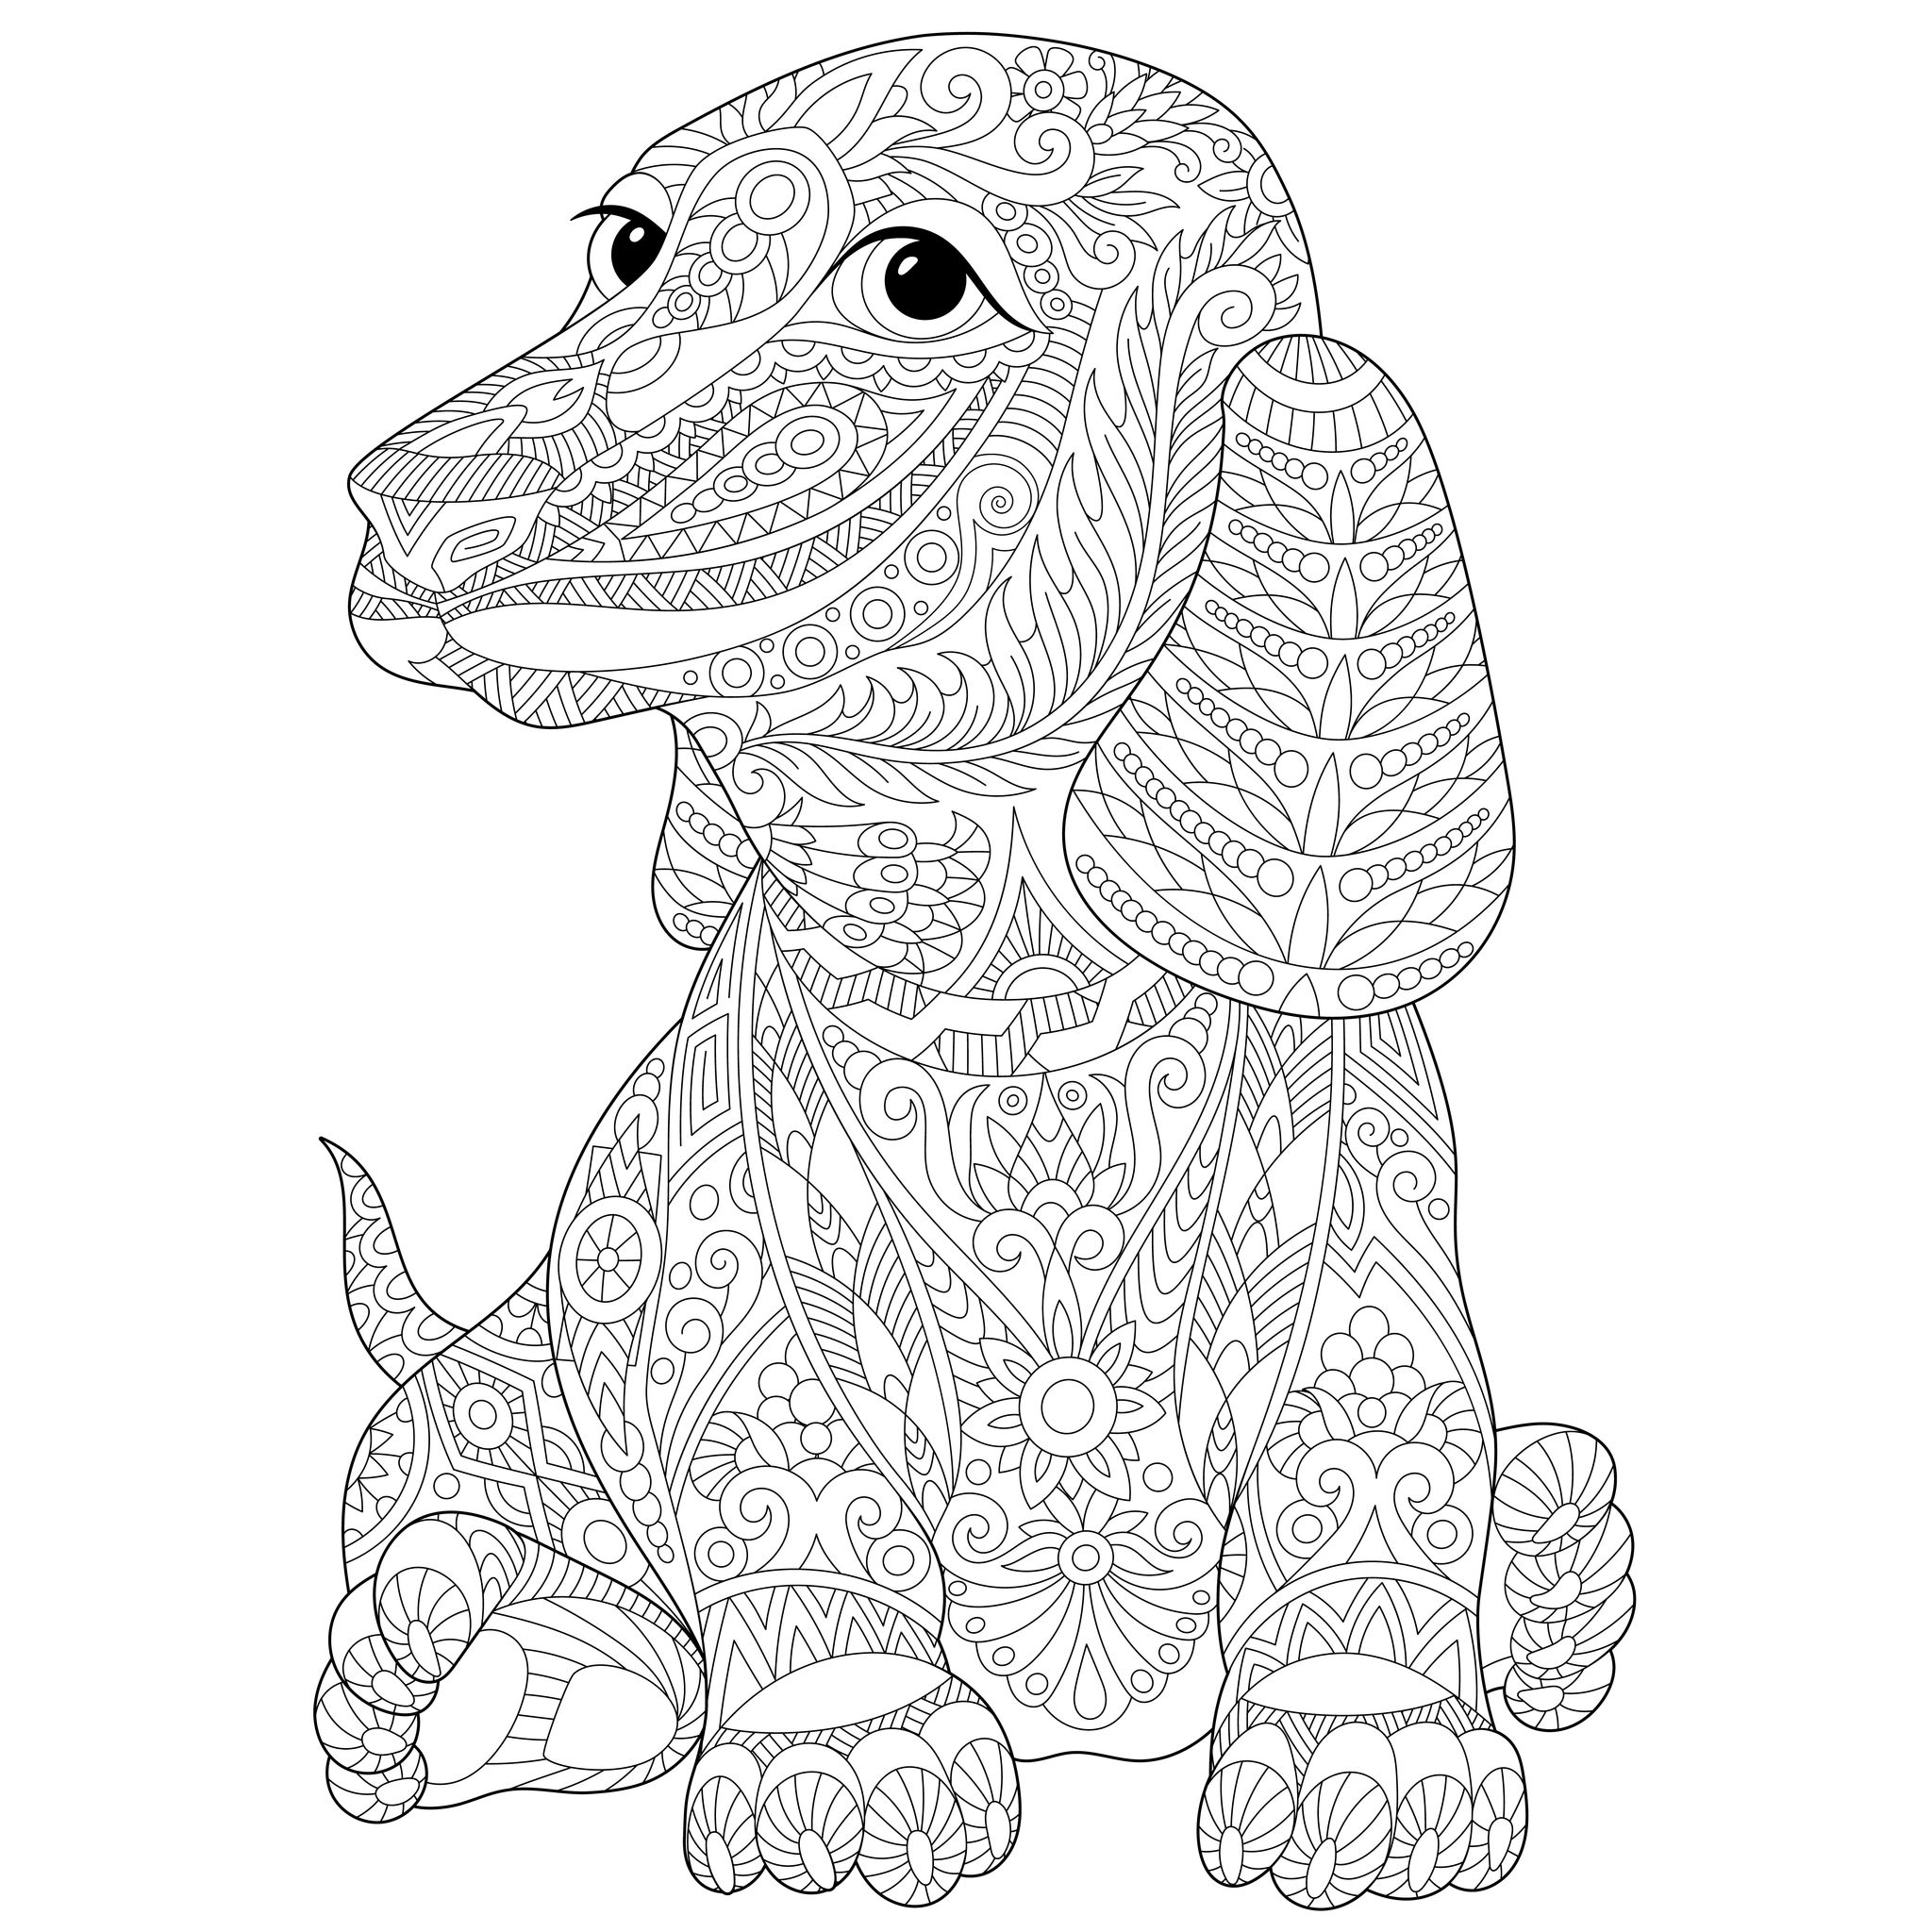 Disegni da colorare per adulti : Cani - 1, Artista : Sybirko   Fonte : 123rf